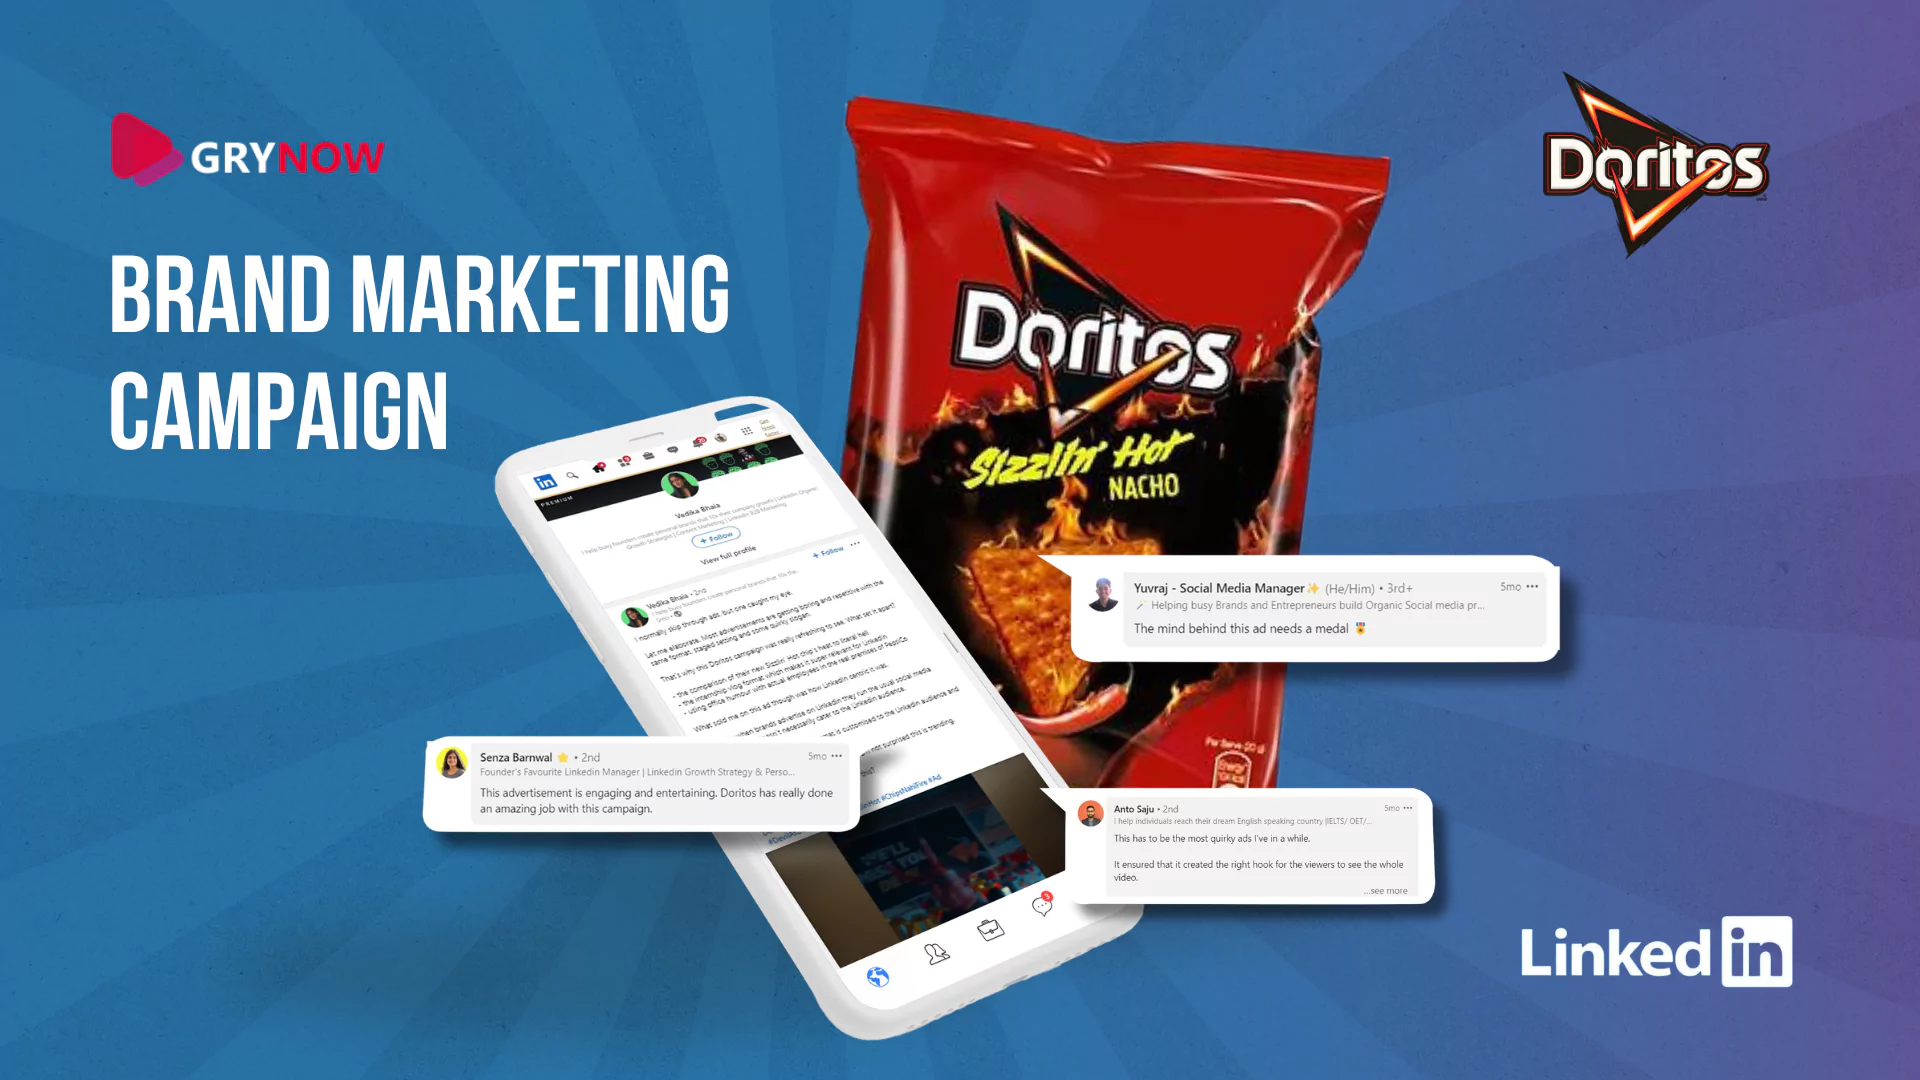 Doritos TV Commercial Campaign: 3M+ Views and Influencer Buzz